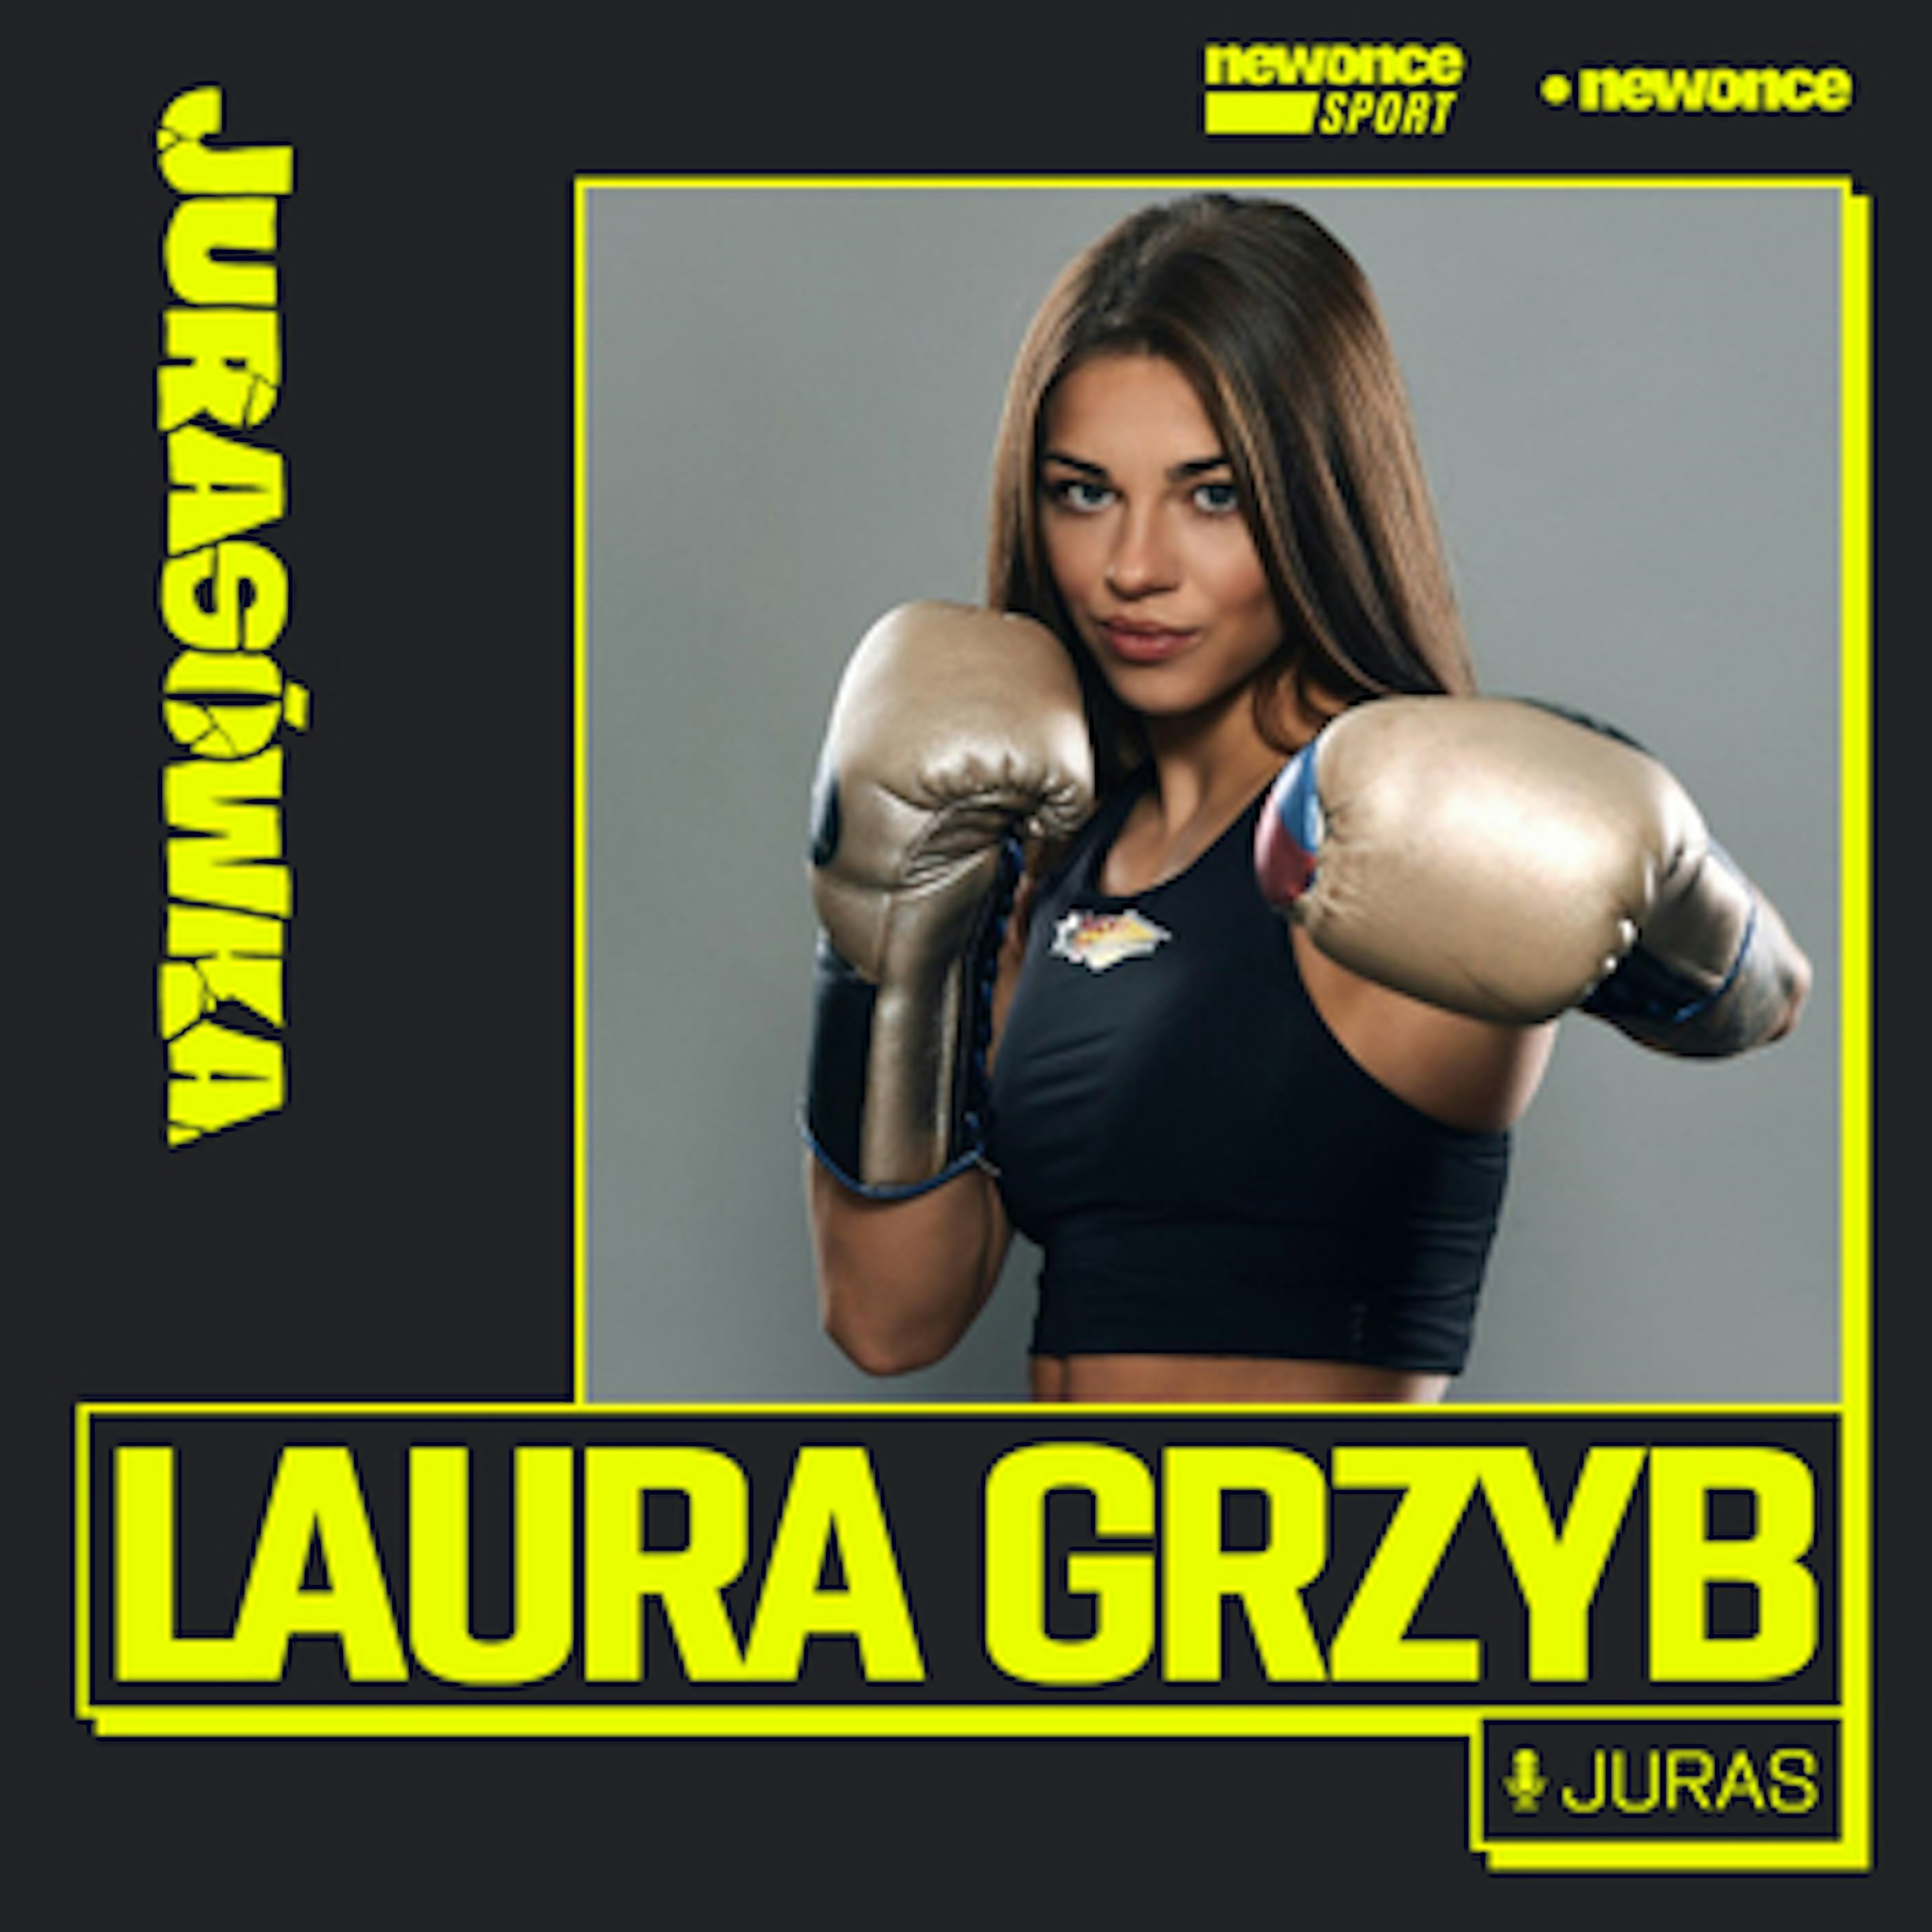 Jurasówka - Laura Grzyb. W boksie chcę inspirować i wygrywać 